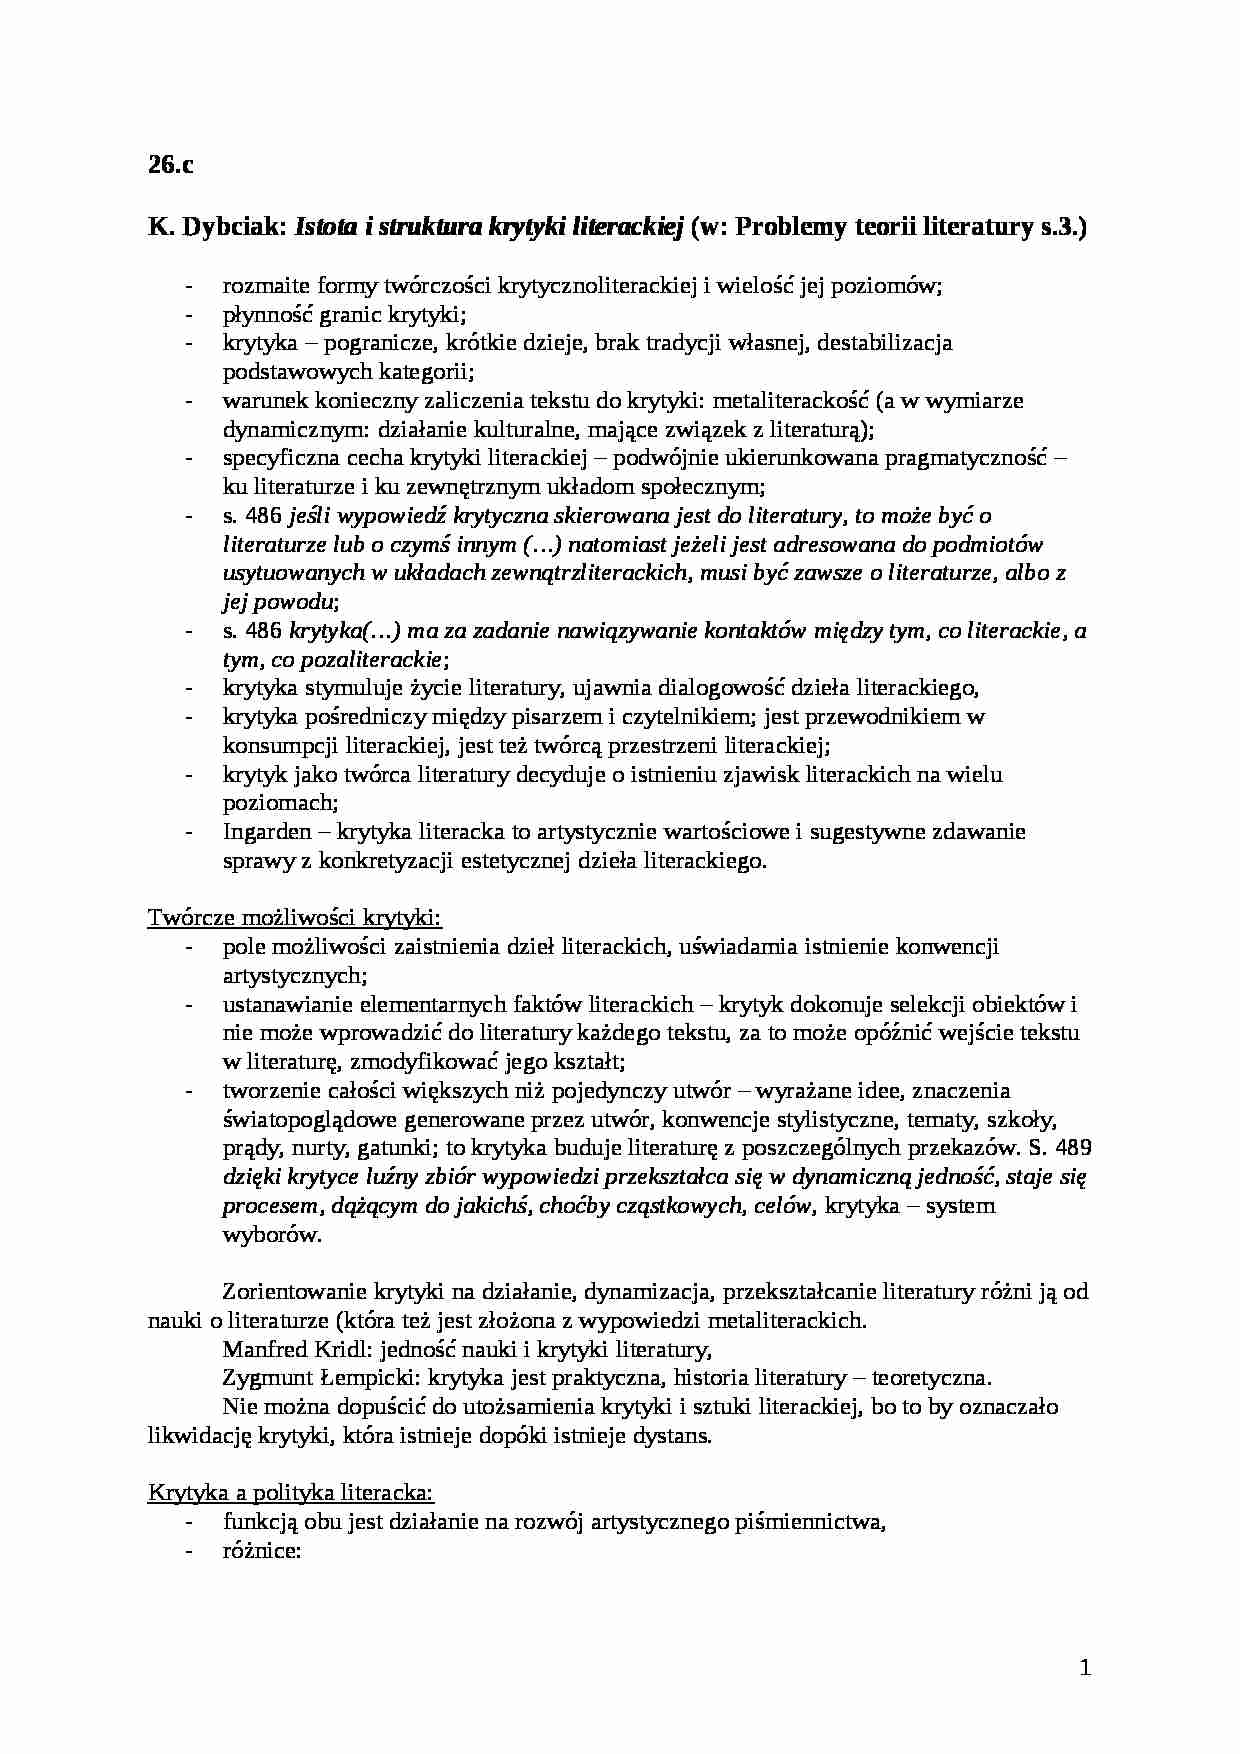 K. Dybciak -  Istota i struktura krytyki literackiej - strona 1